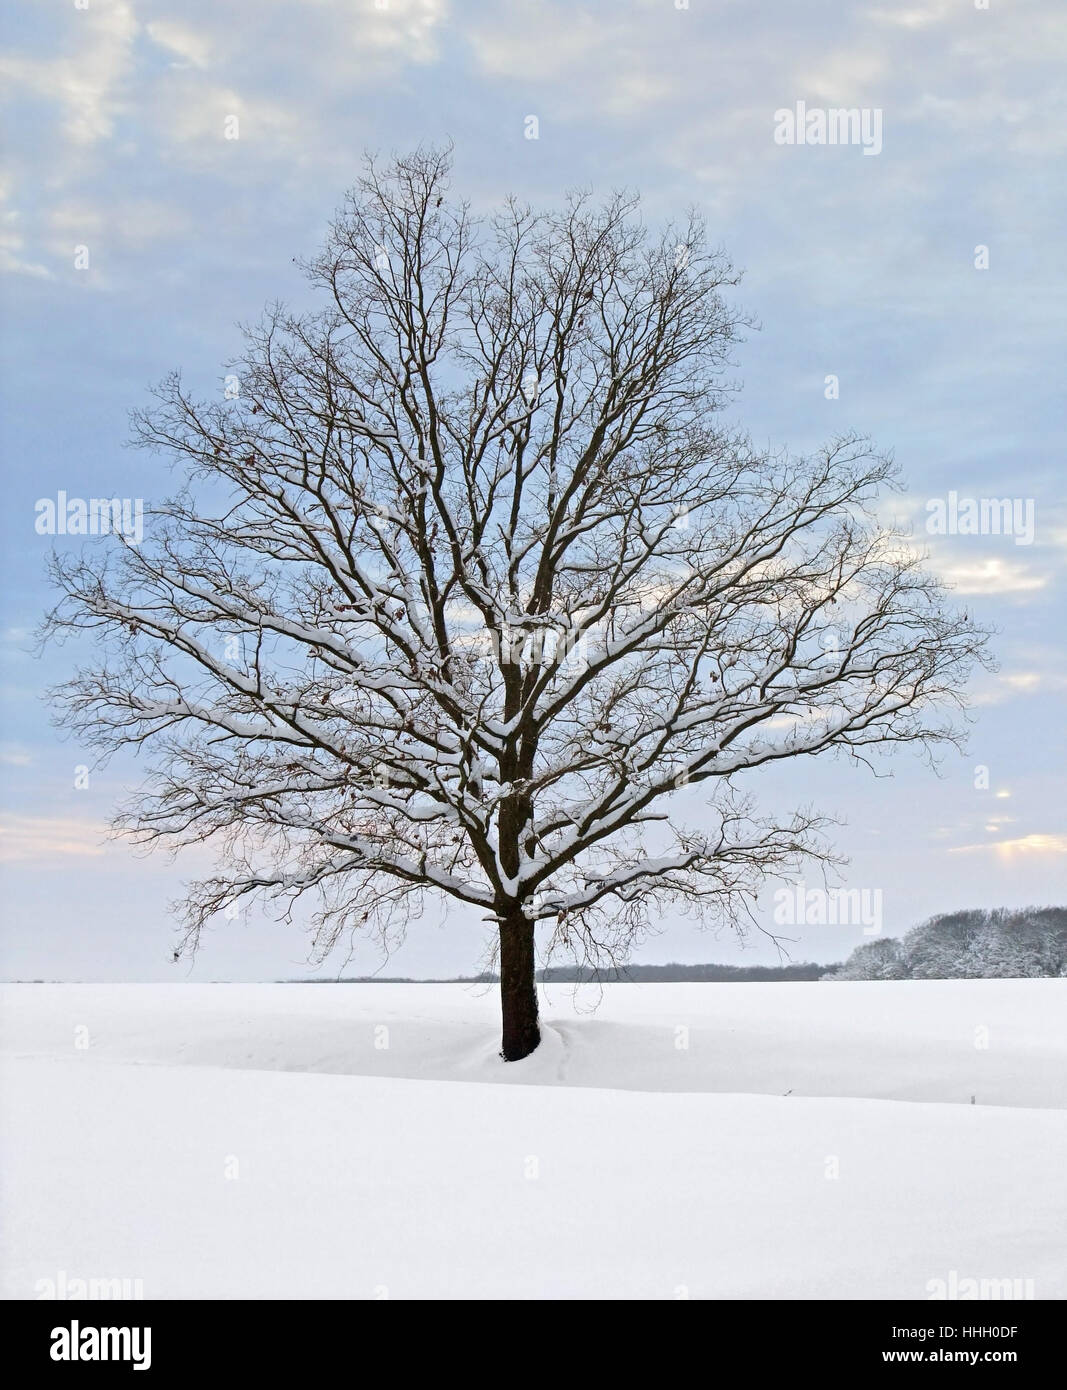 Rurale idilliaco paesaggio invernale con stand-alone di albero a sera Tempo in Hohenlohe, una zona della Germania meridionale Foto Stock